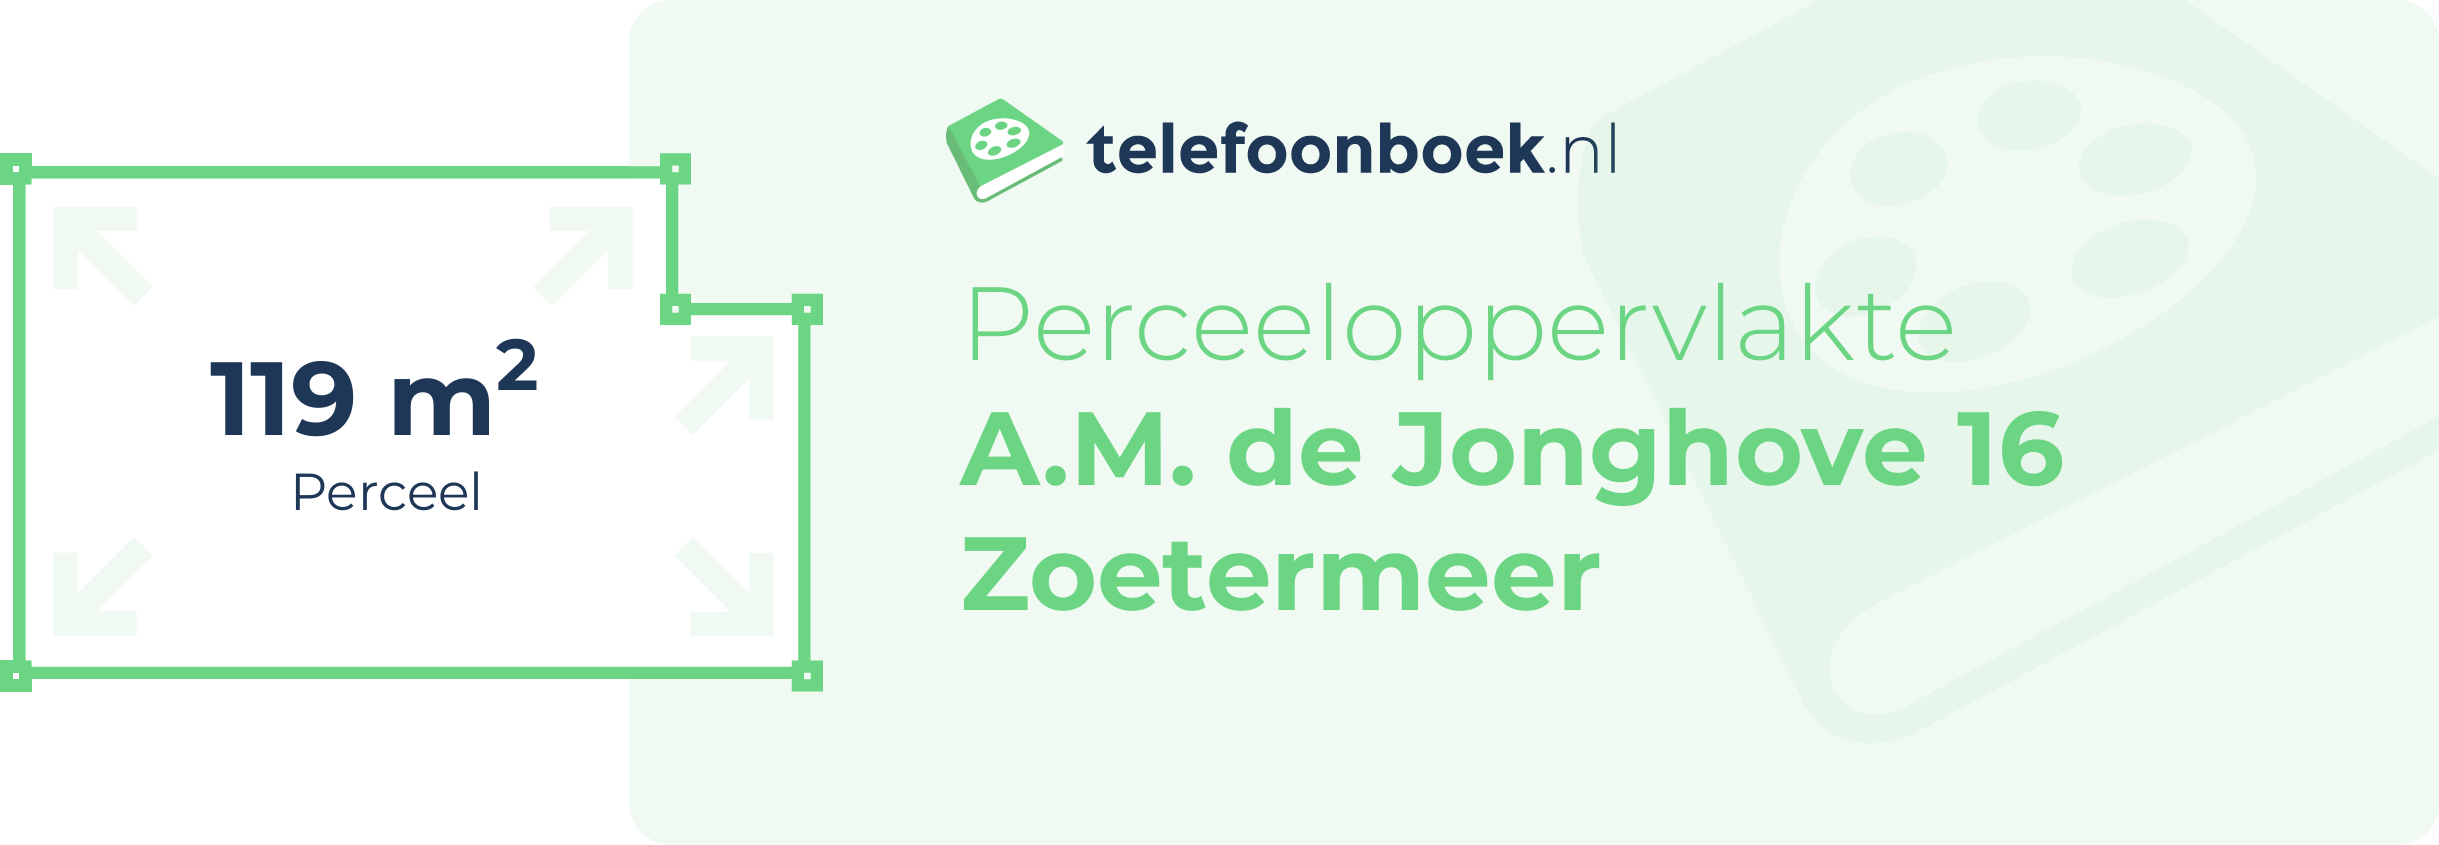 Perceeloppervlakte A.M. De Jonghove 16 Zoetermeer